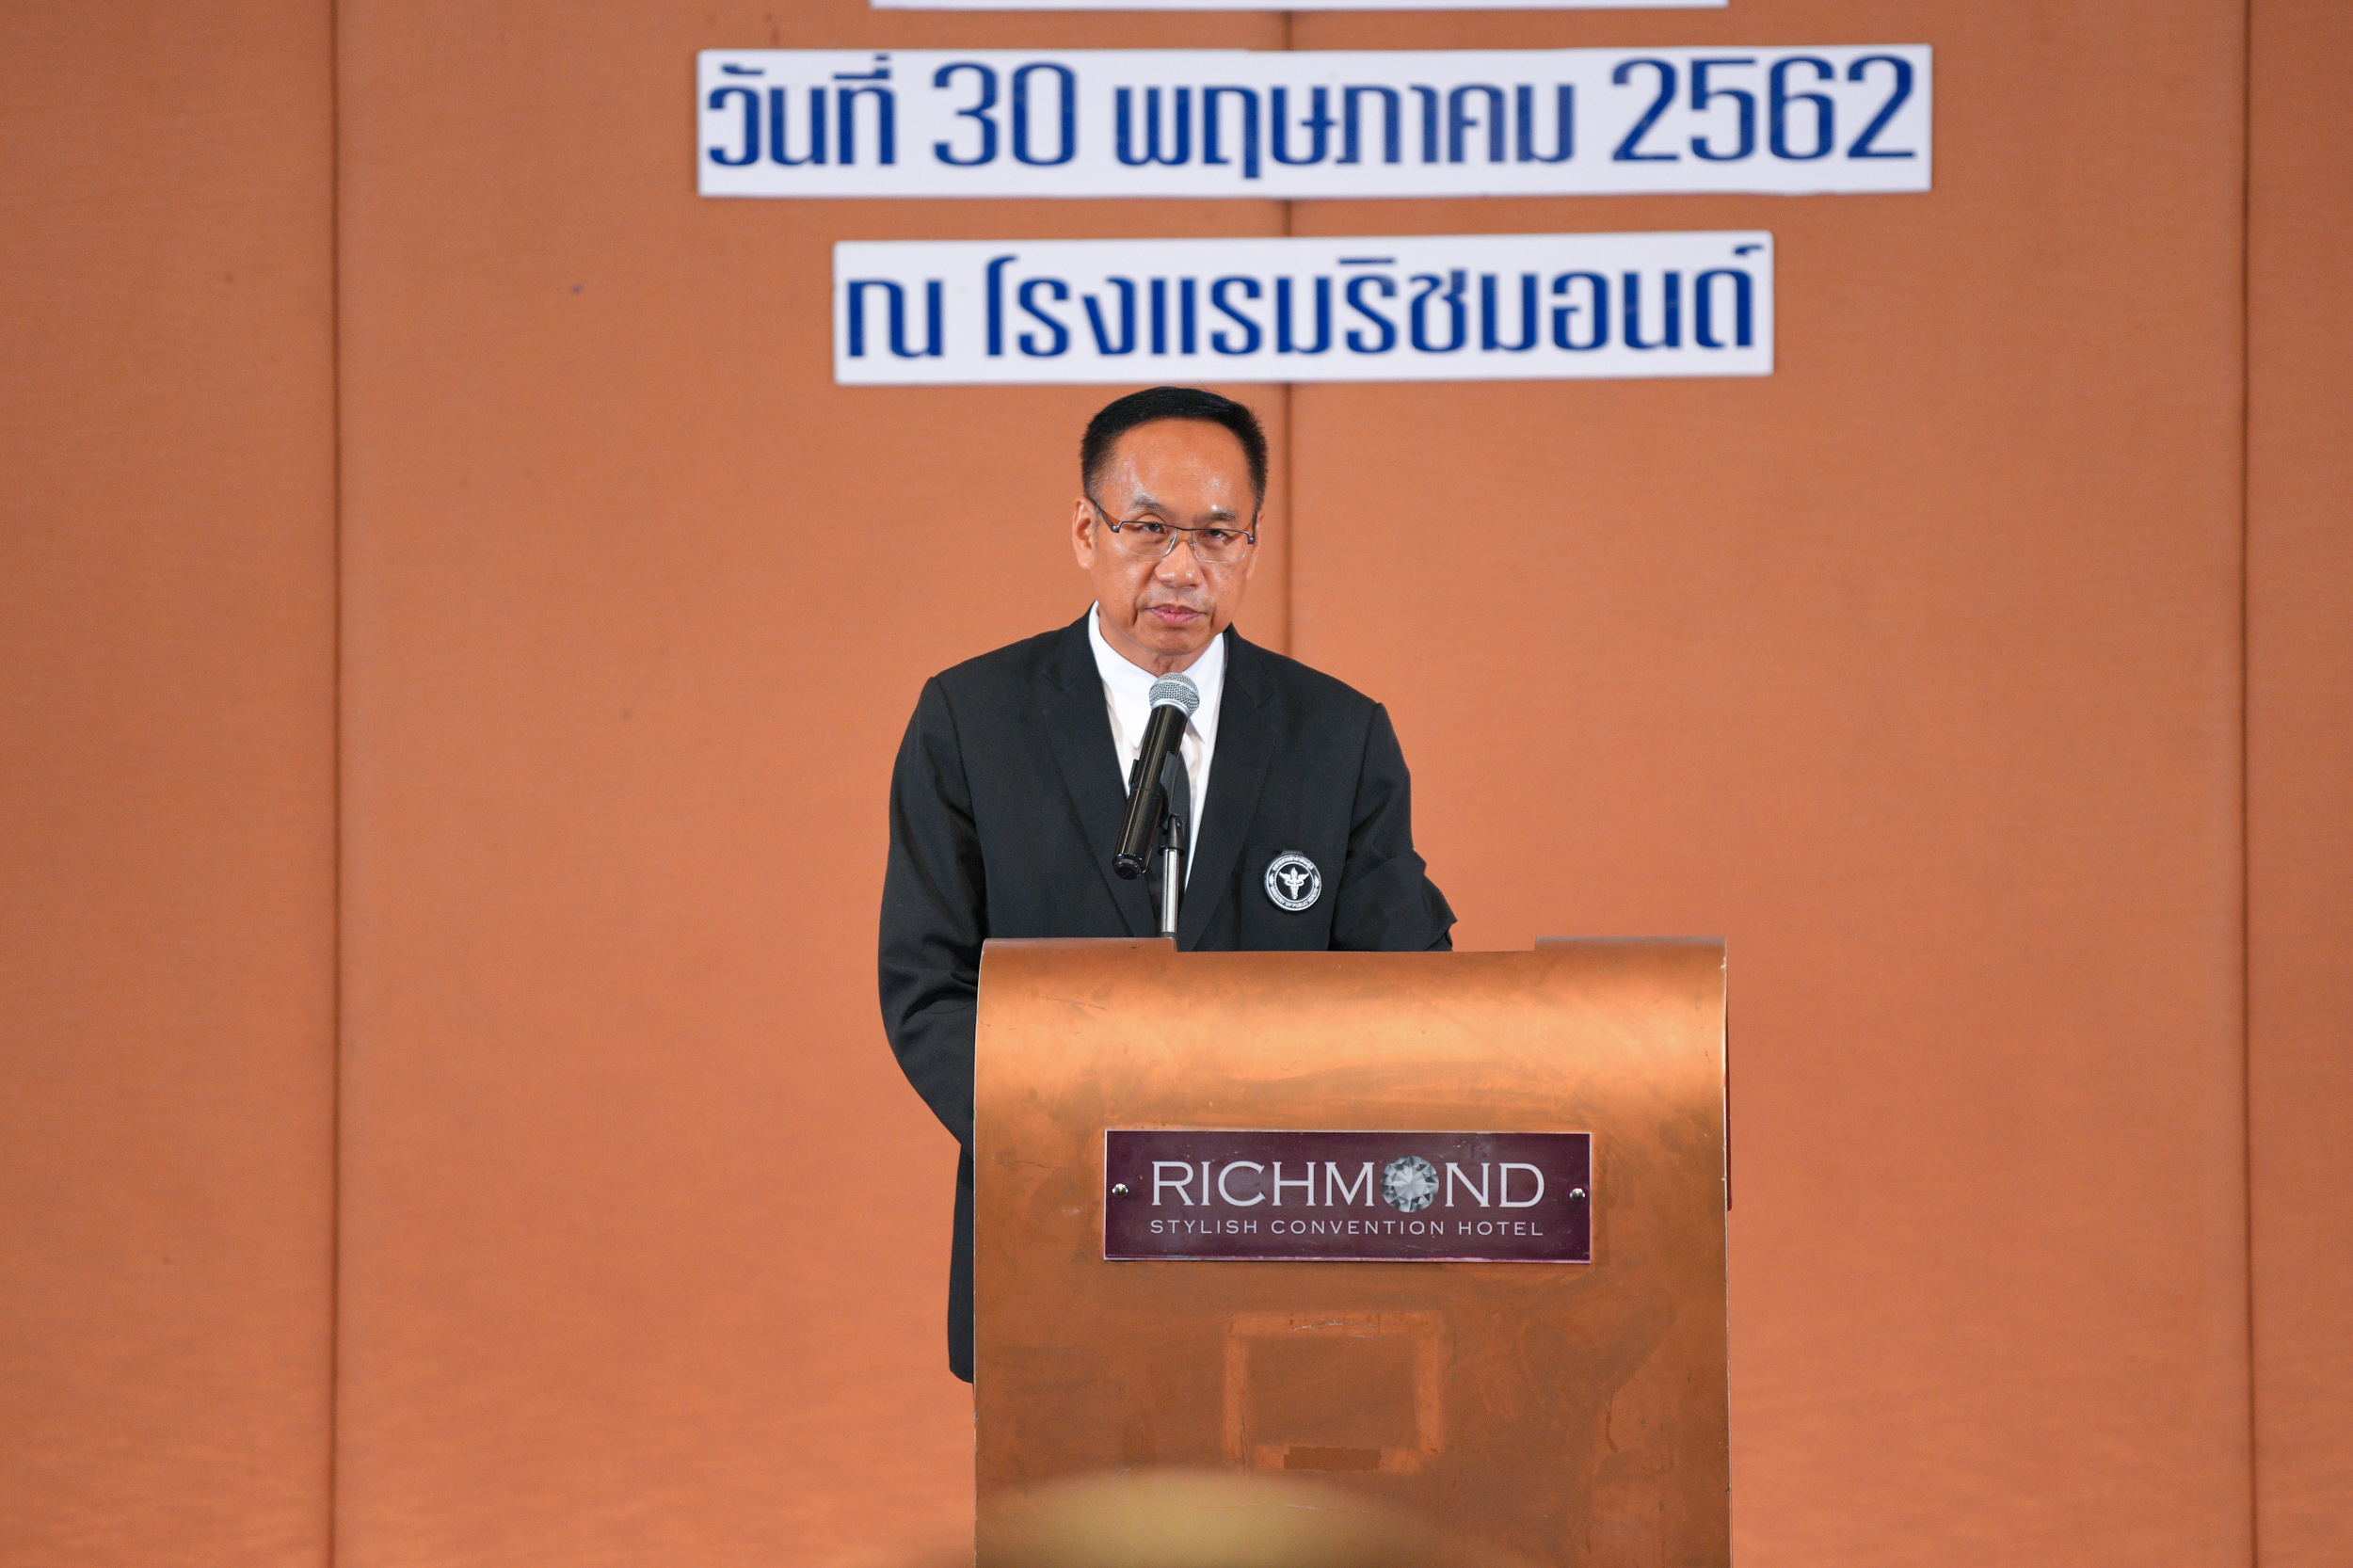 ปิดโครงการ 3 ล้าน 3 ปี เลิกบุหรี่ทั่วไทย thaihealth